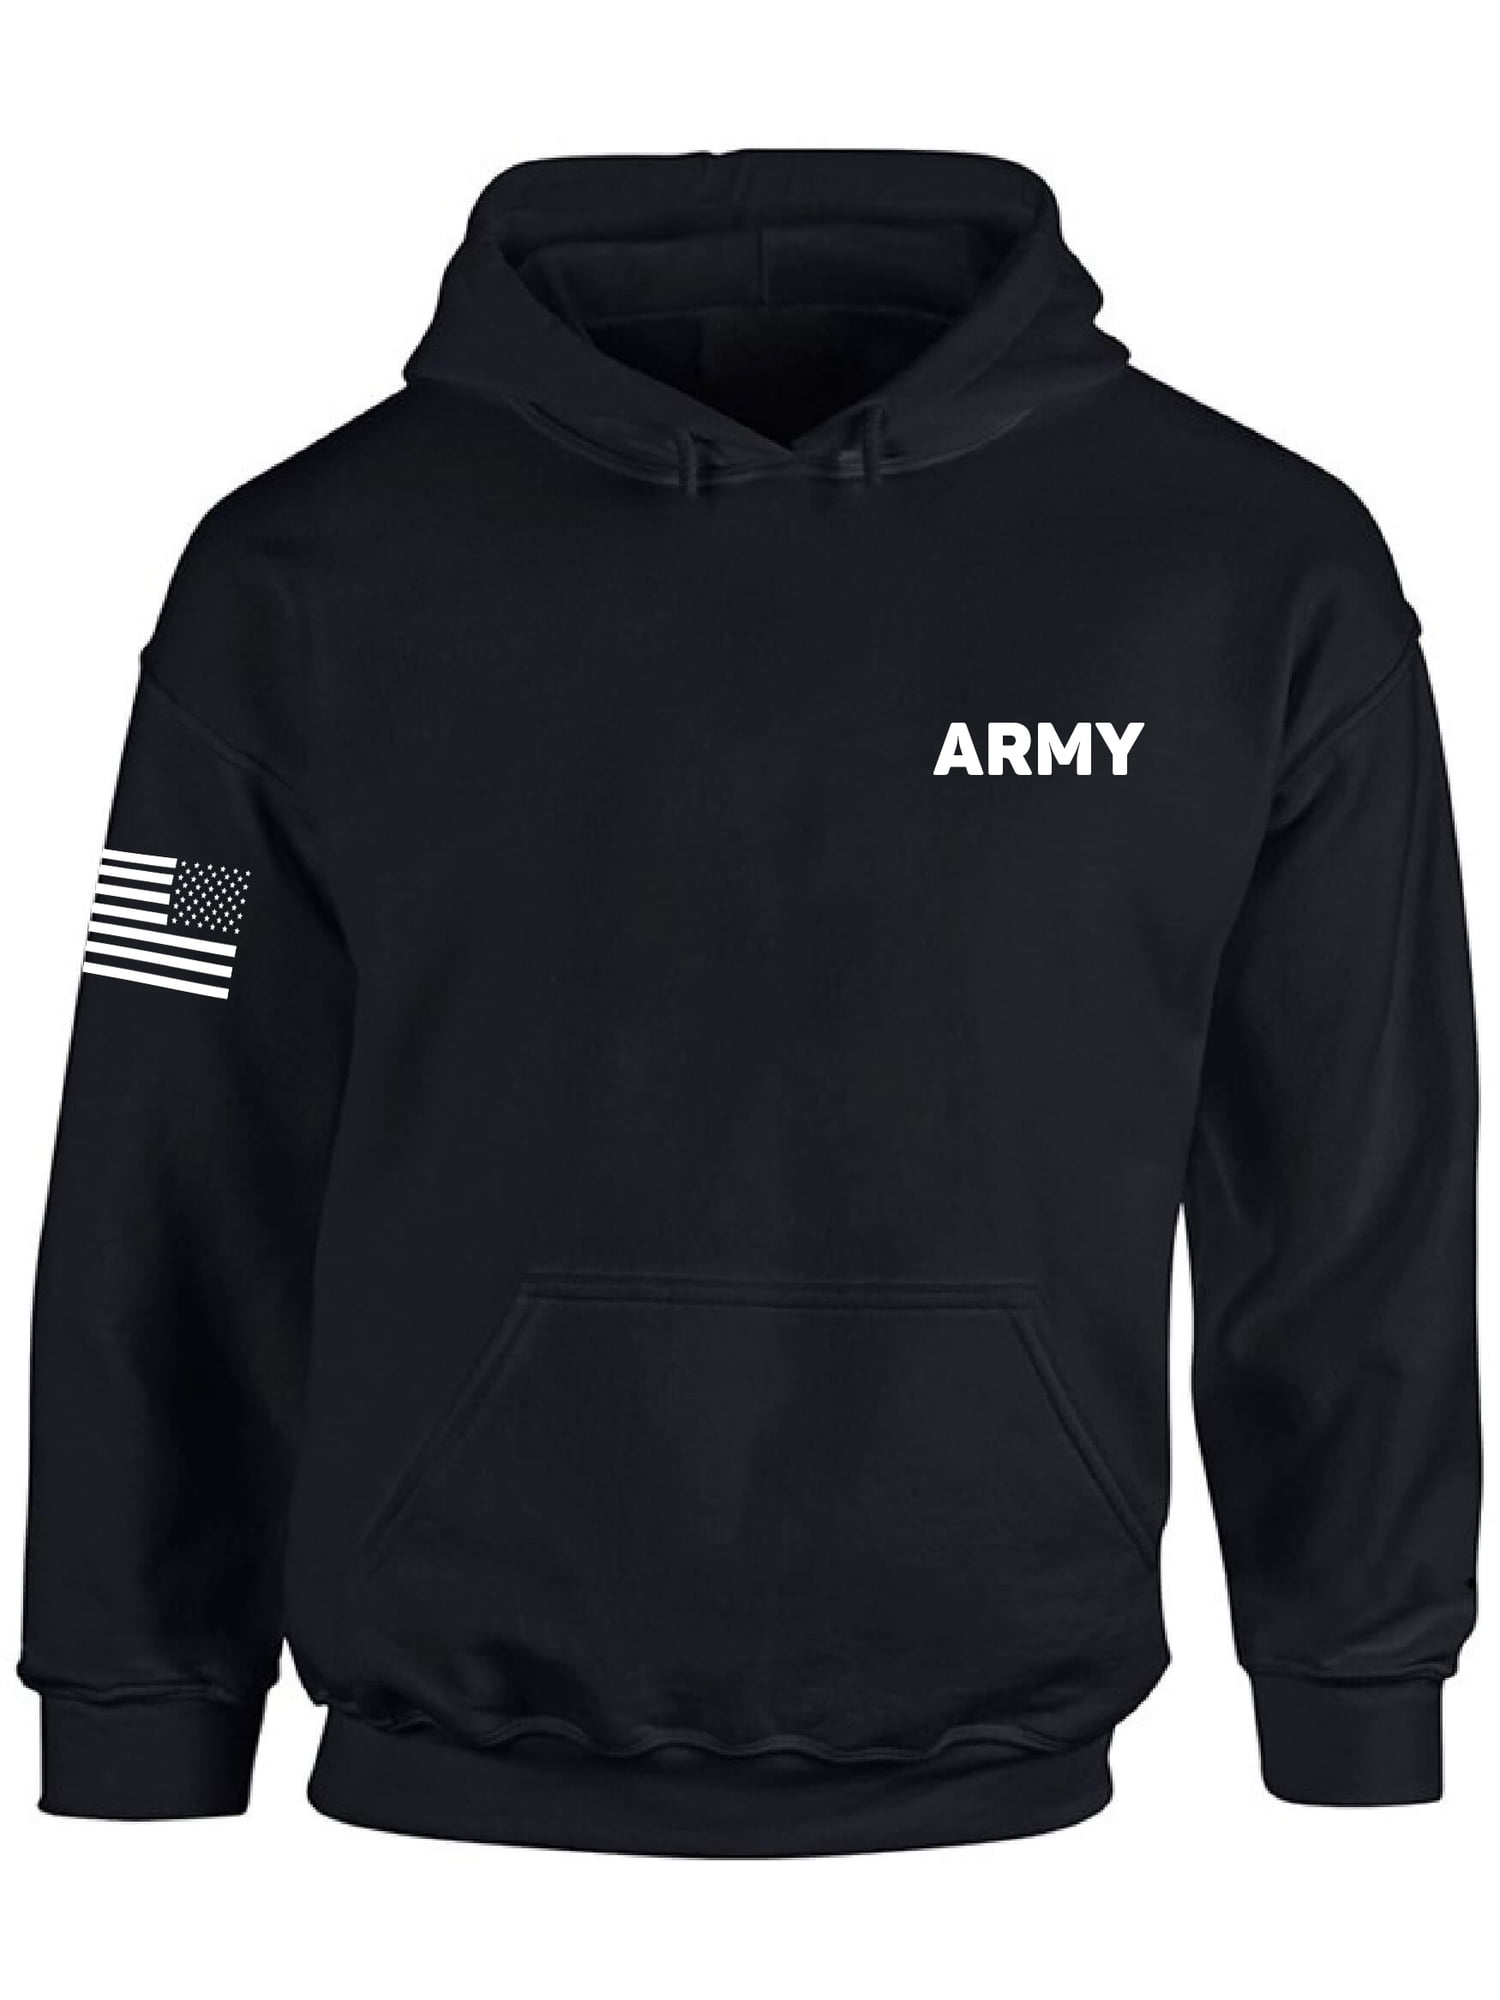 Awkward Styles American Flag Army Hoodie Vintage USA Army Men Women Hooded Sweatshirt